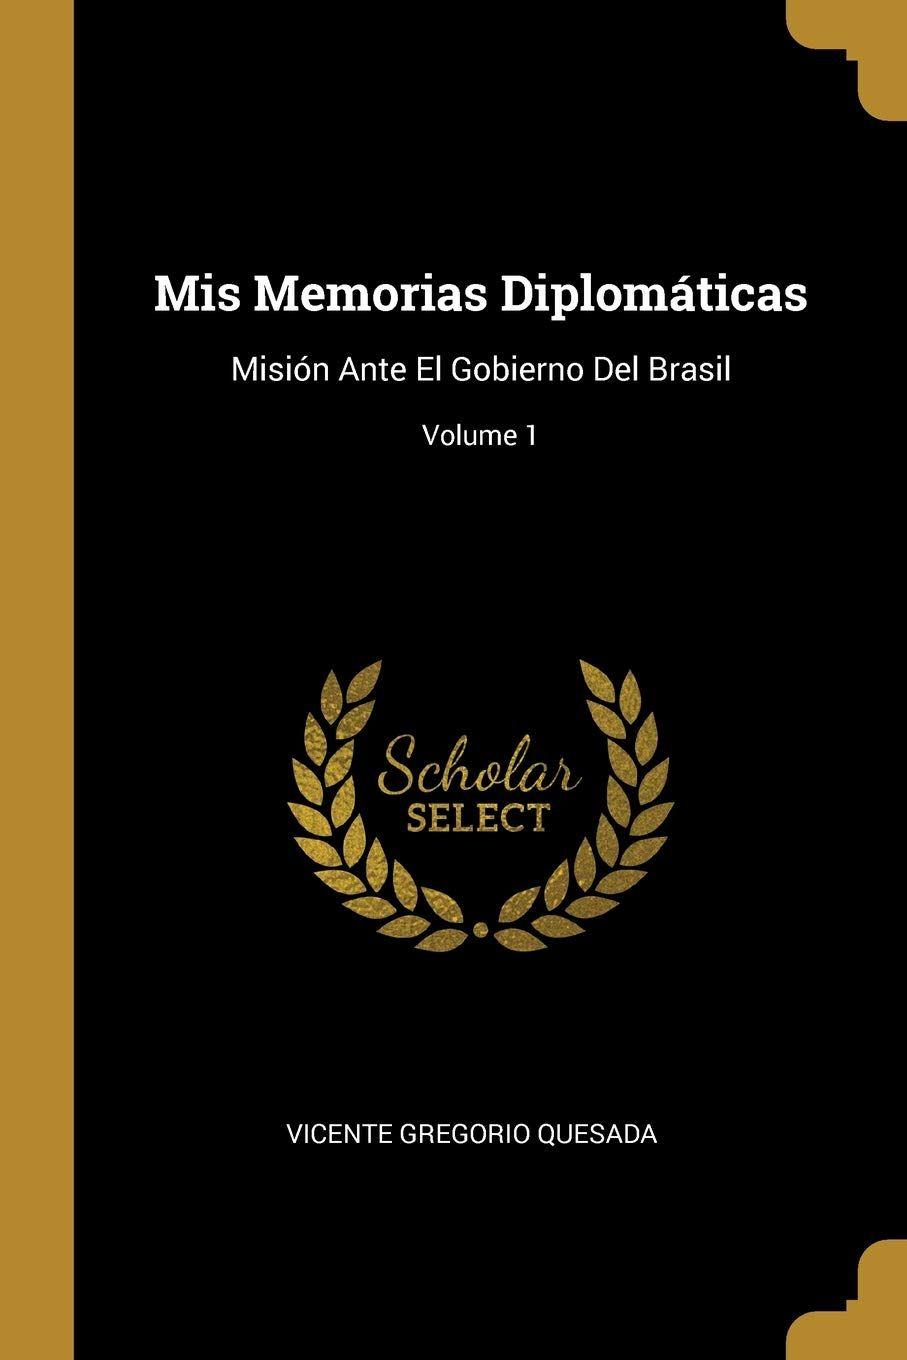 MSN Brasil Logo - MIS Memorias Diplomáticas: Misión Ante El Gobierno del Brasil